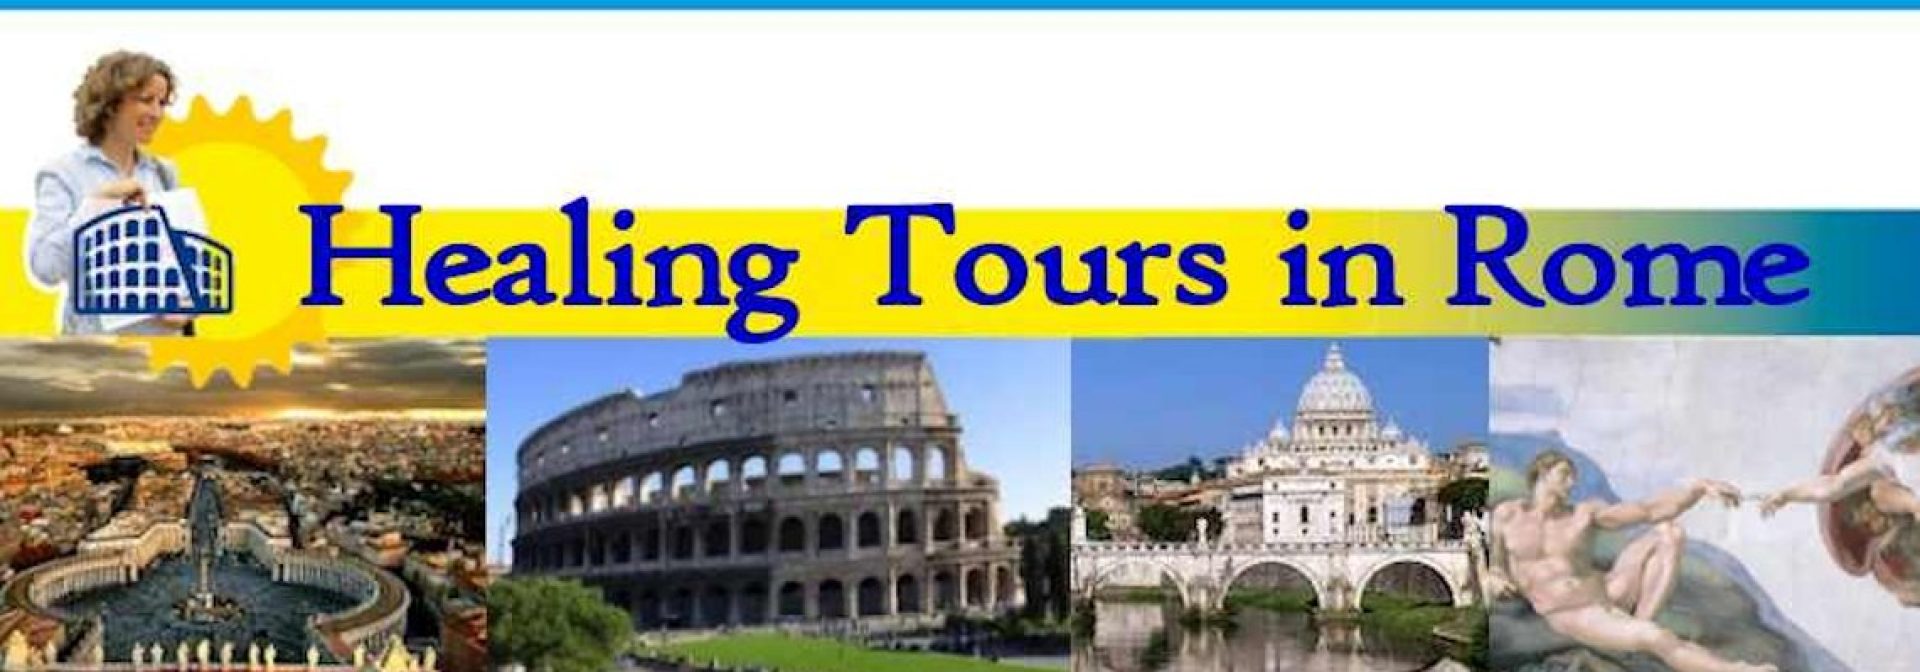 Healing Tours in Rome